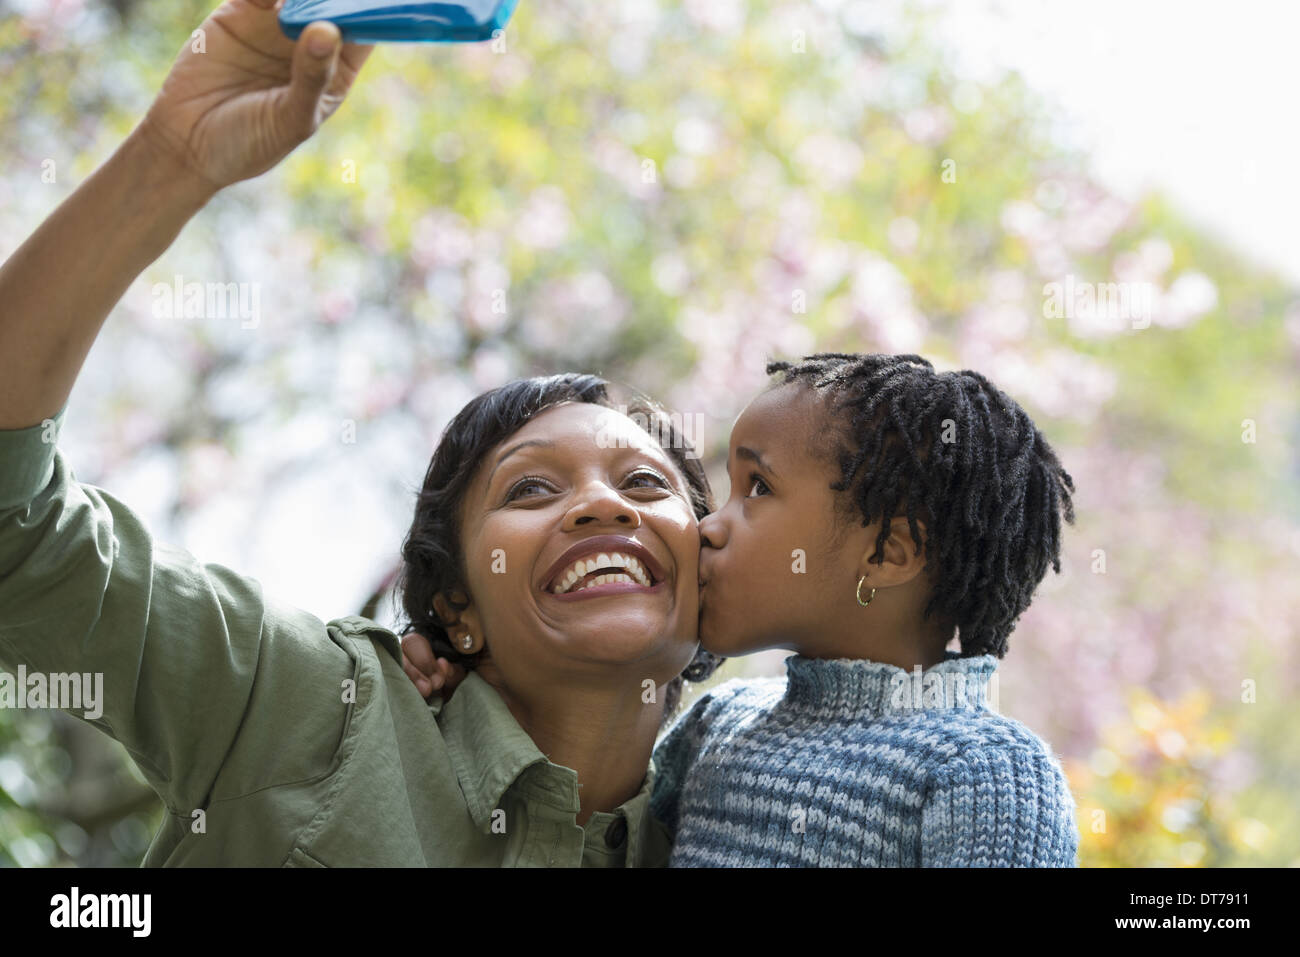 A New York City Park in primavera. Sole fiore di ciliegio. Una madre figlio che posano per una foto scattata con un telefono intelligente. Foto Stock